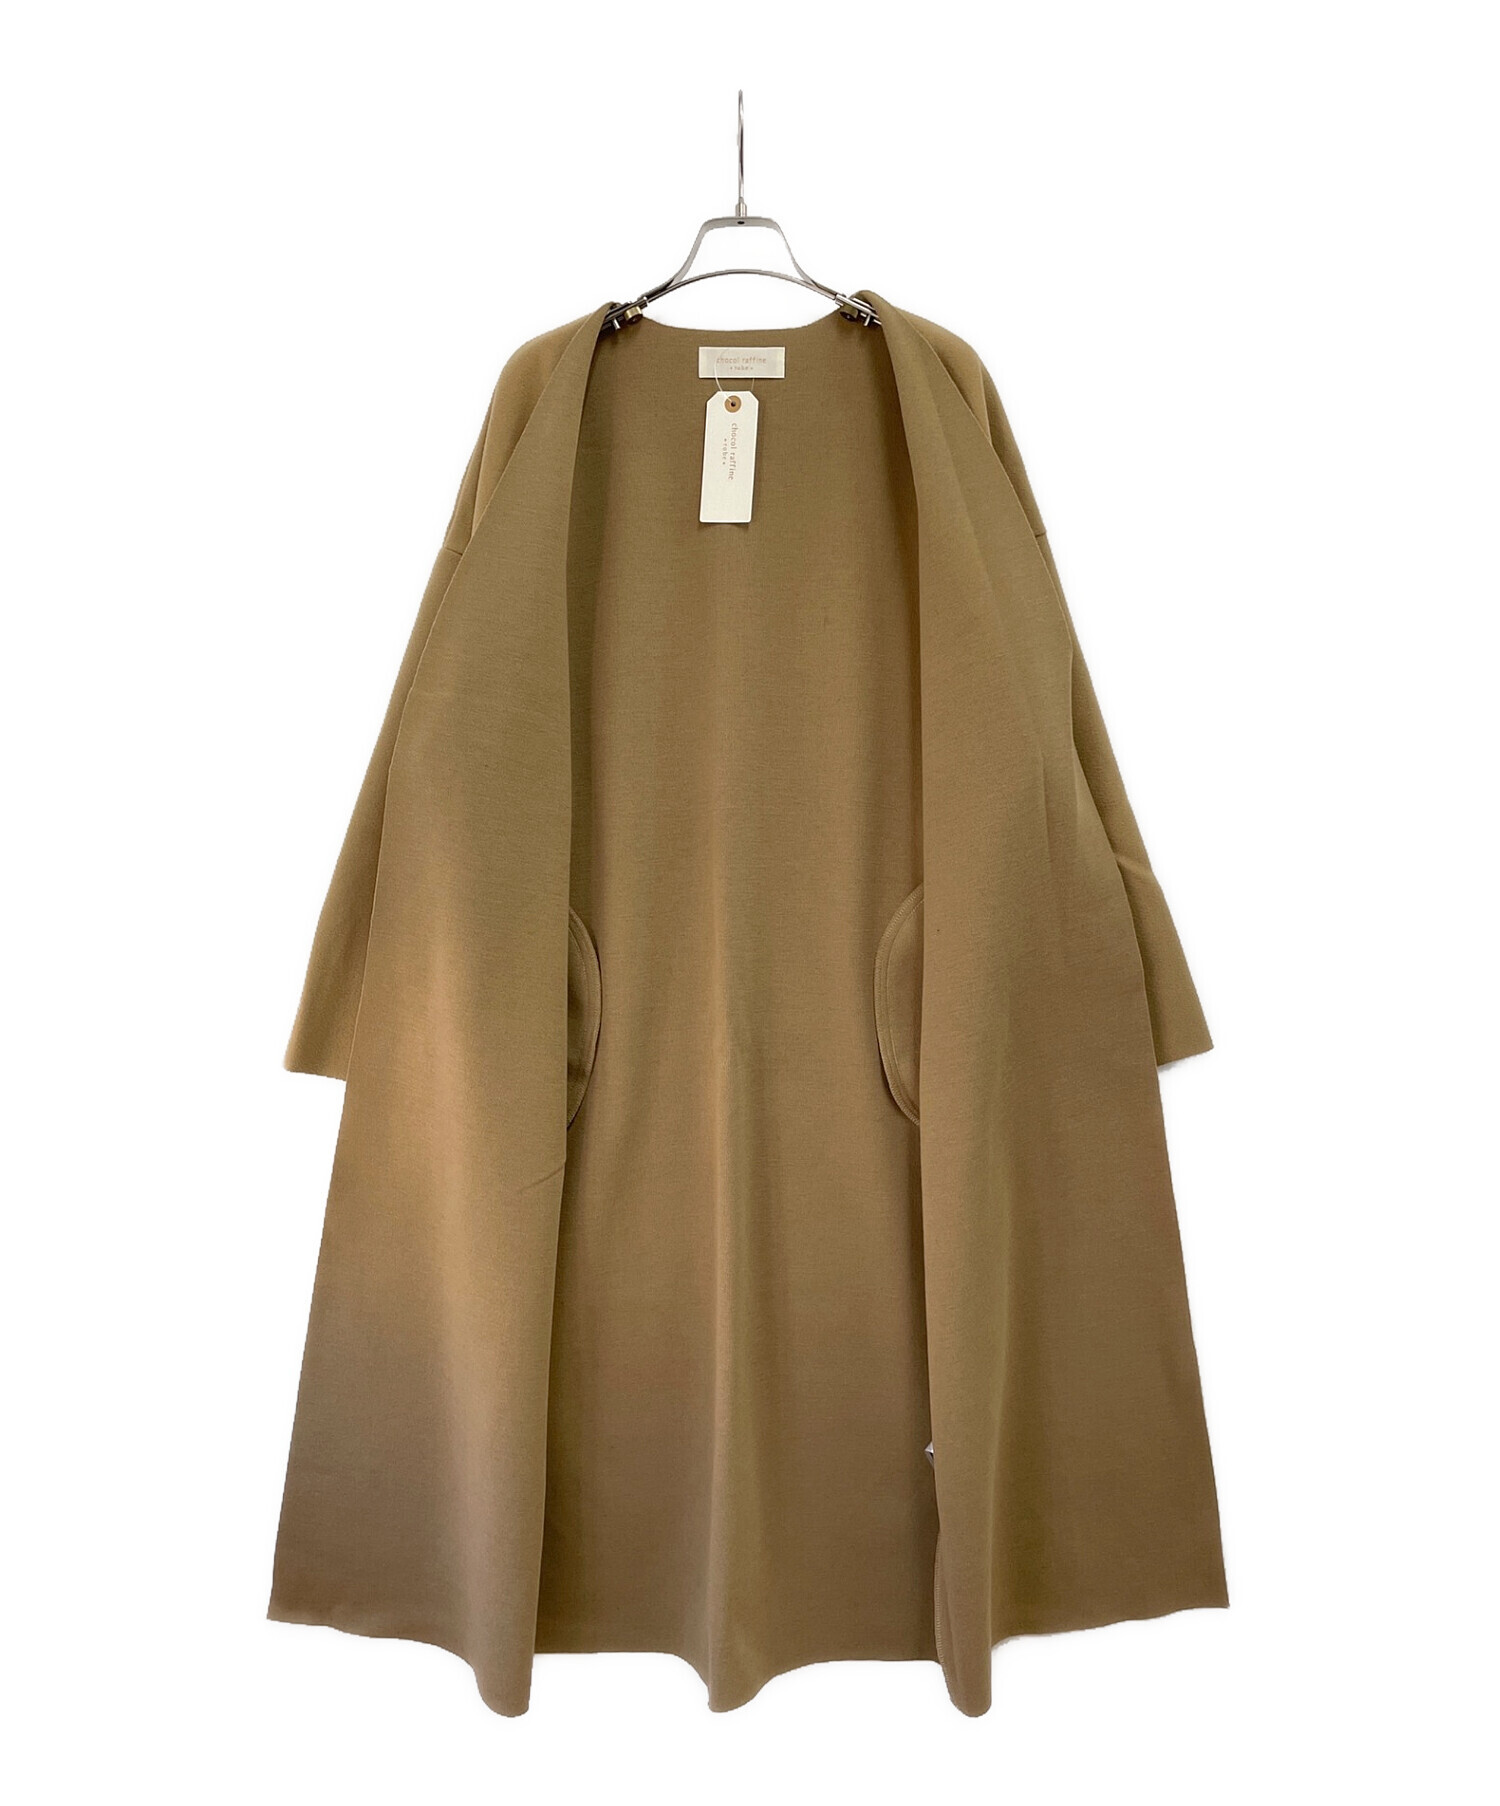 chocol raffine robe (ショコラフィネローブ) 着流しノーカラーリングコート ベージュ サイズ:SIZE FREE 未使用品